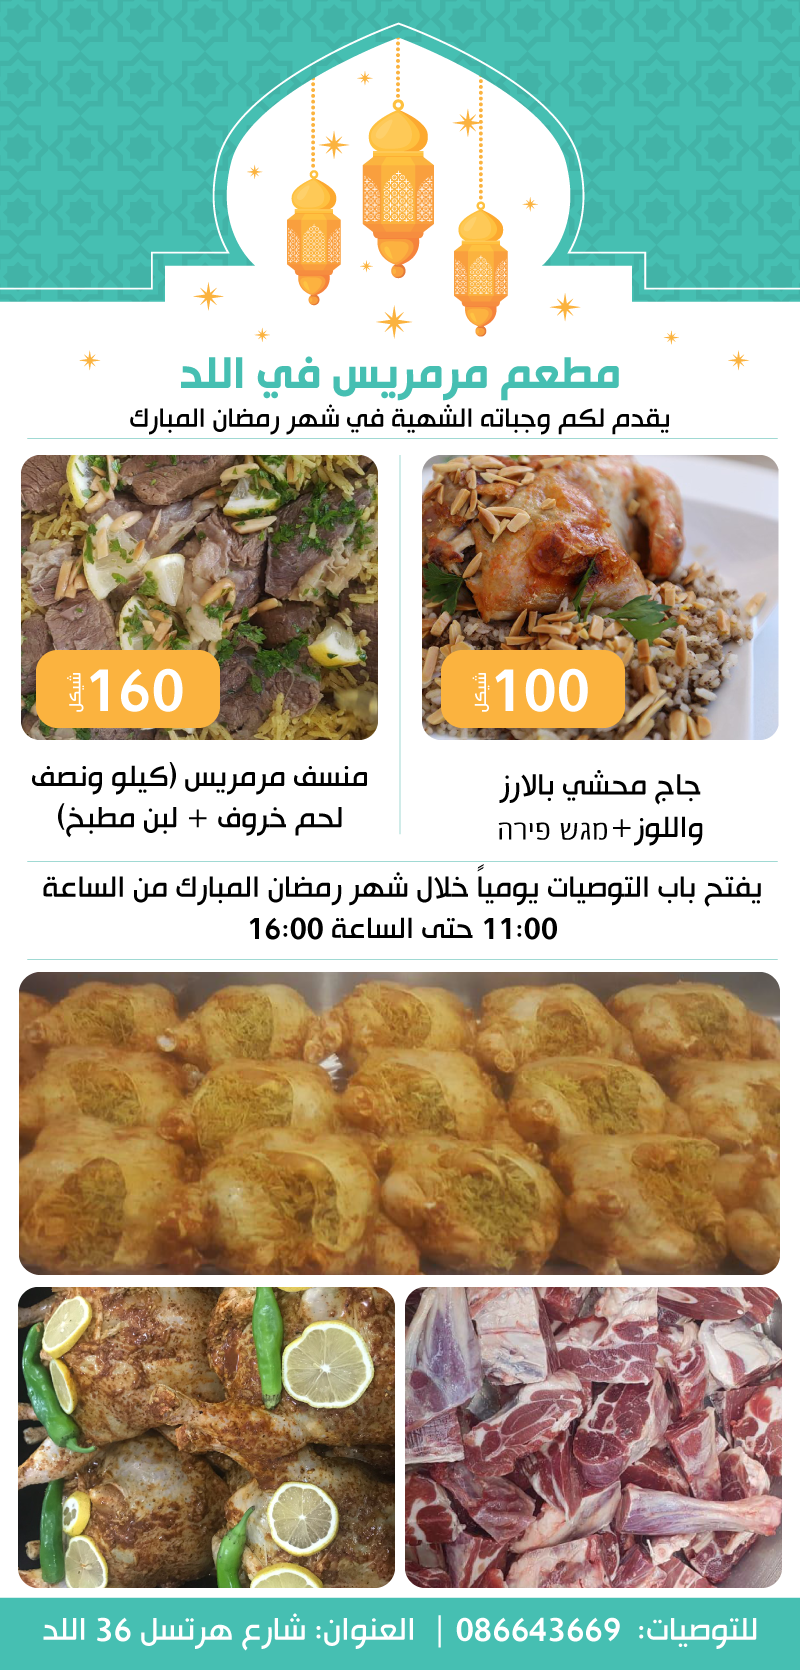 للطعم حكاية - مطعم مرميس في اللد ووجباته الشهية للتوصية في رمضان 